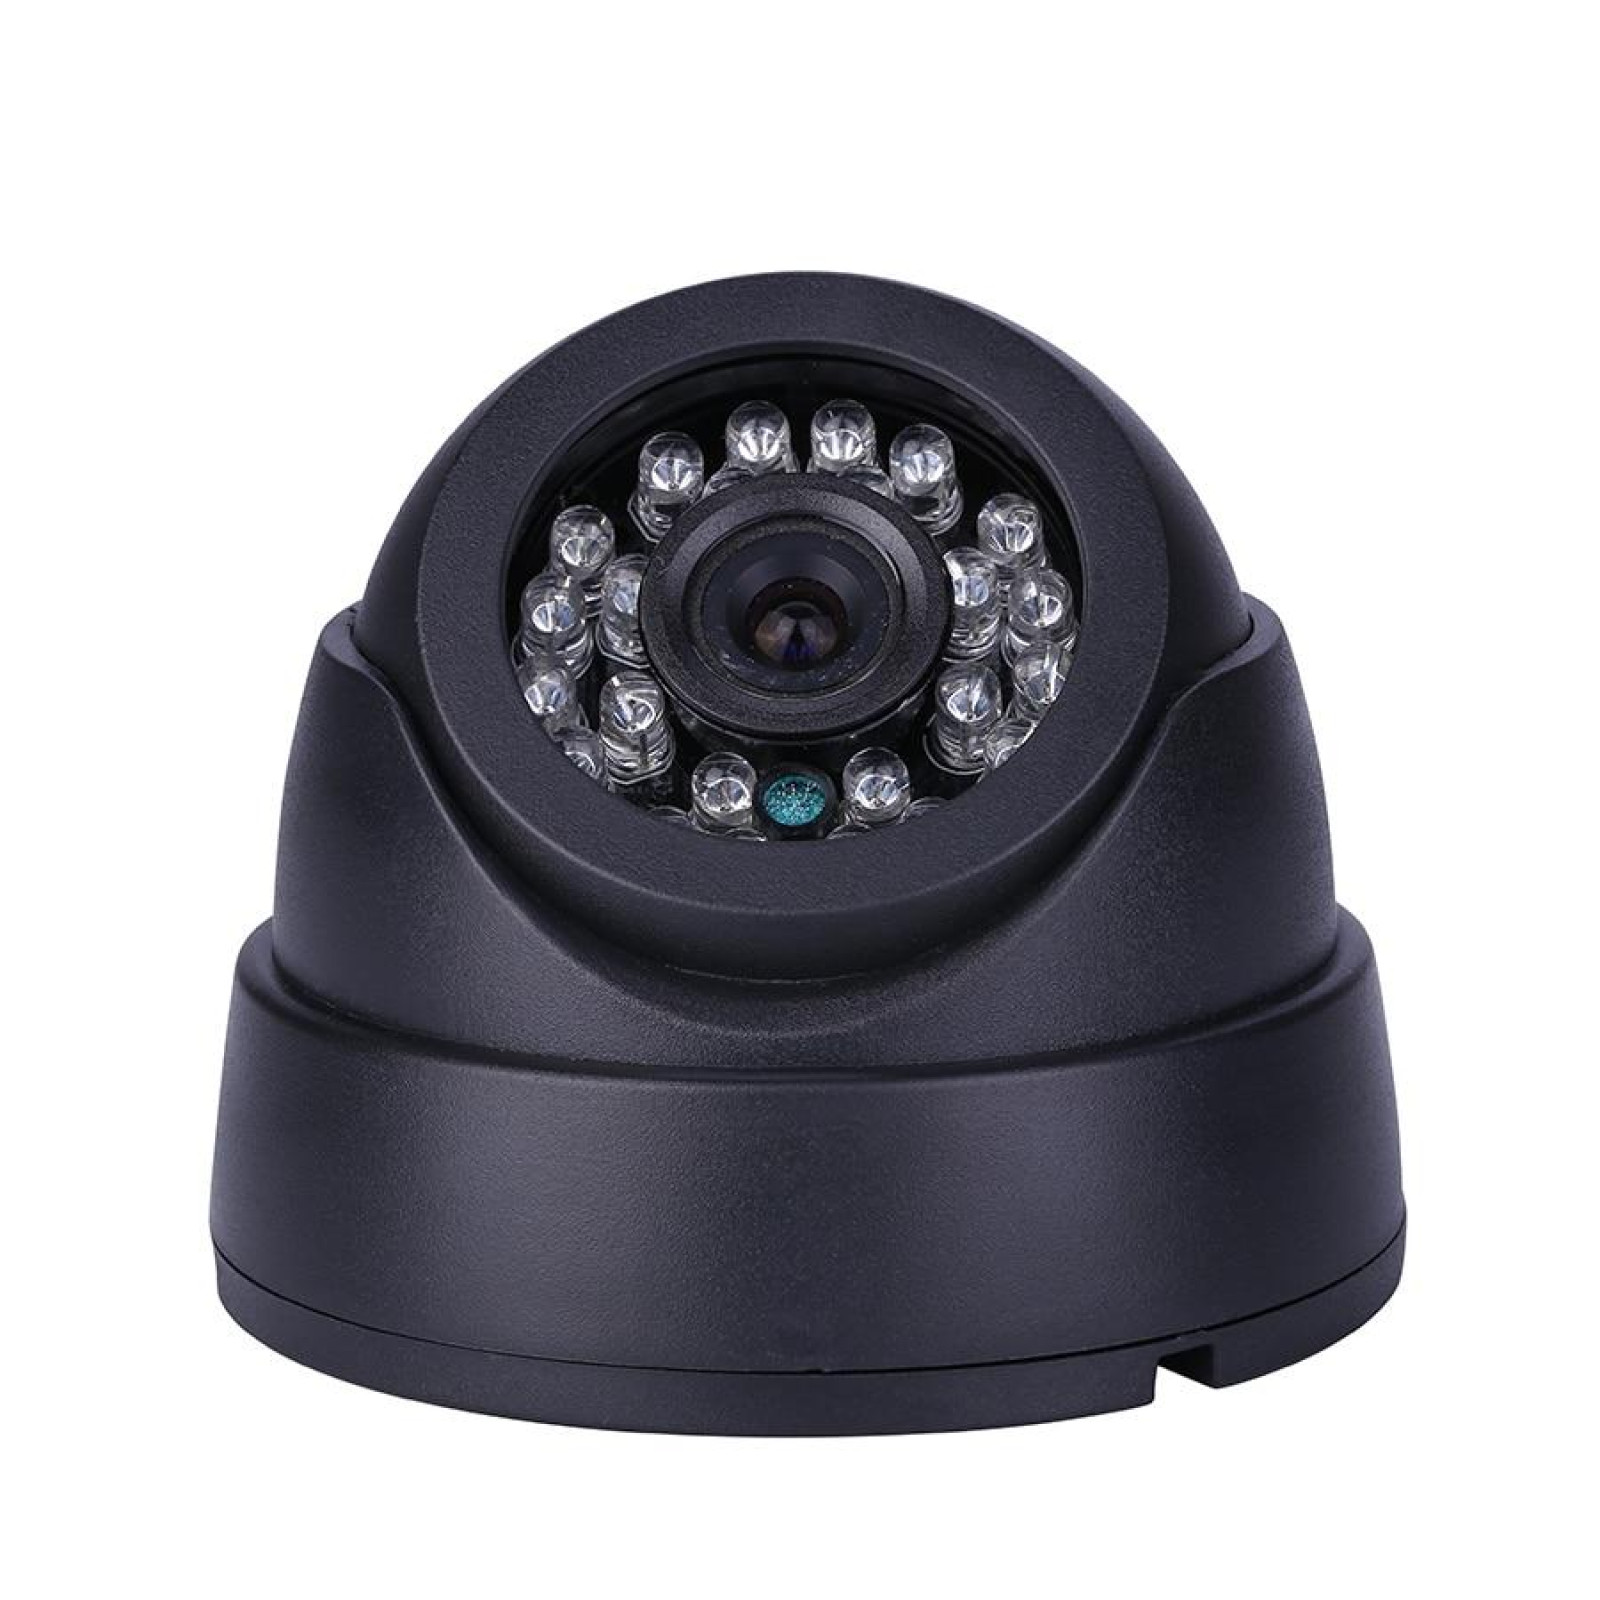 Камера видеонаблюдения купольная CAMERA 349 IP 1.3 mp 180910